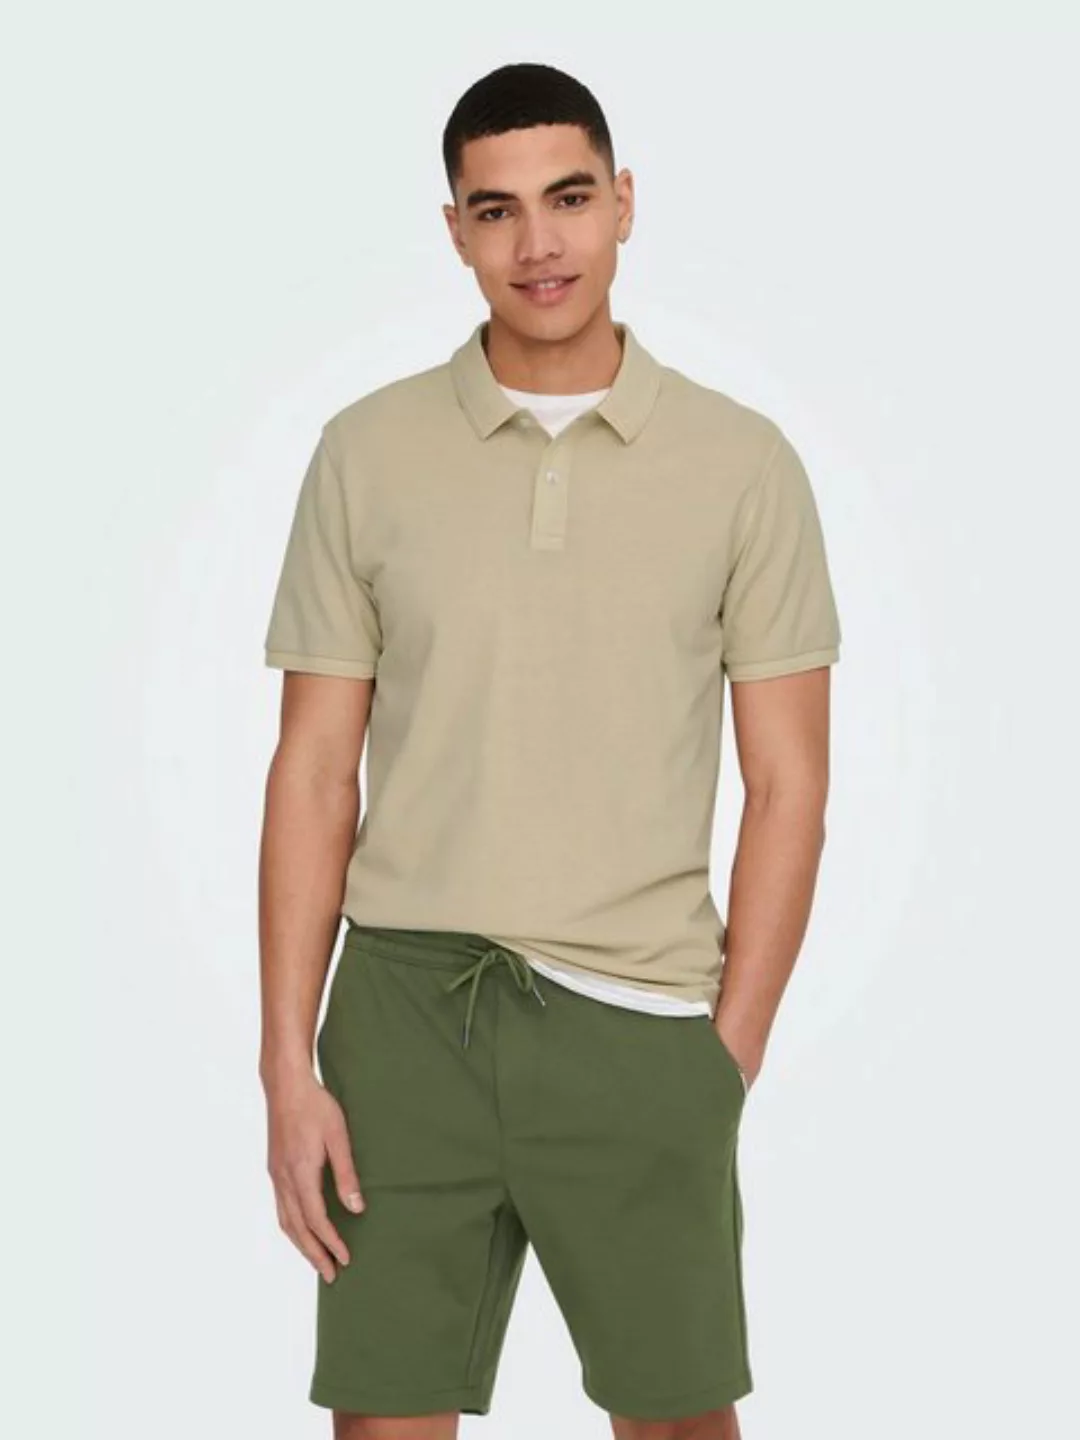 ONLY & SONS Poloshirt Poloshirt aus Baumwolle Kurzarm Slim Fit 7489 in Grau günstig online kaufen